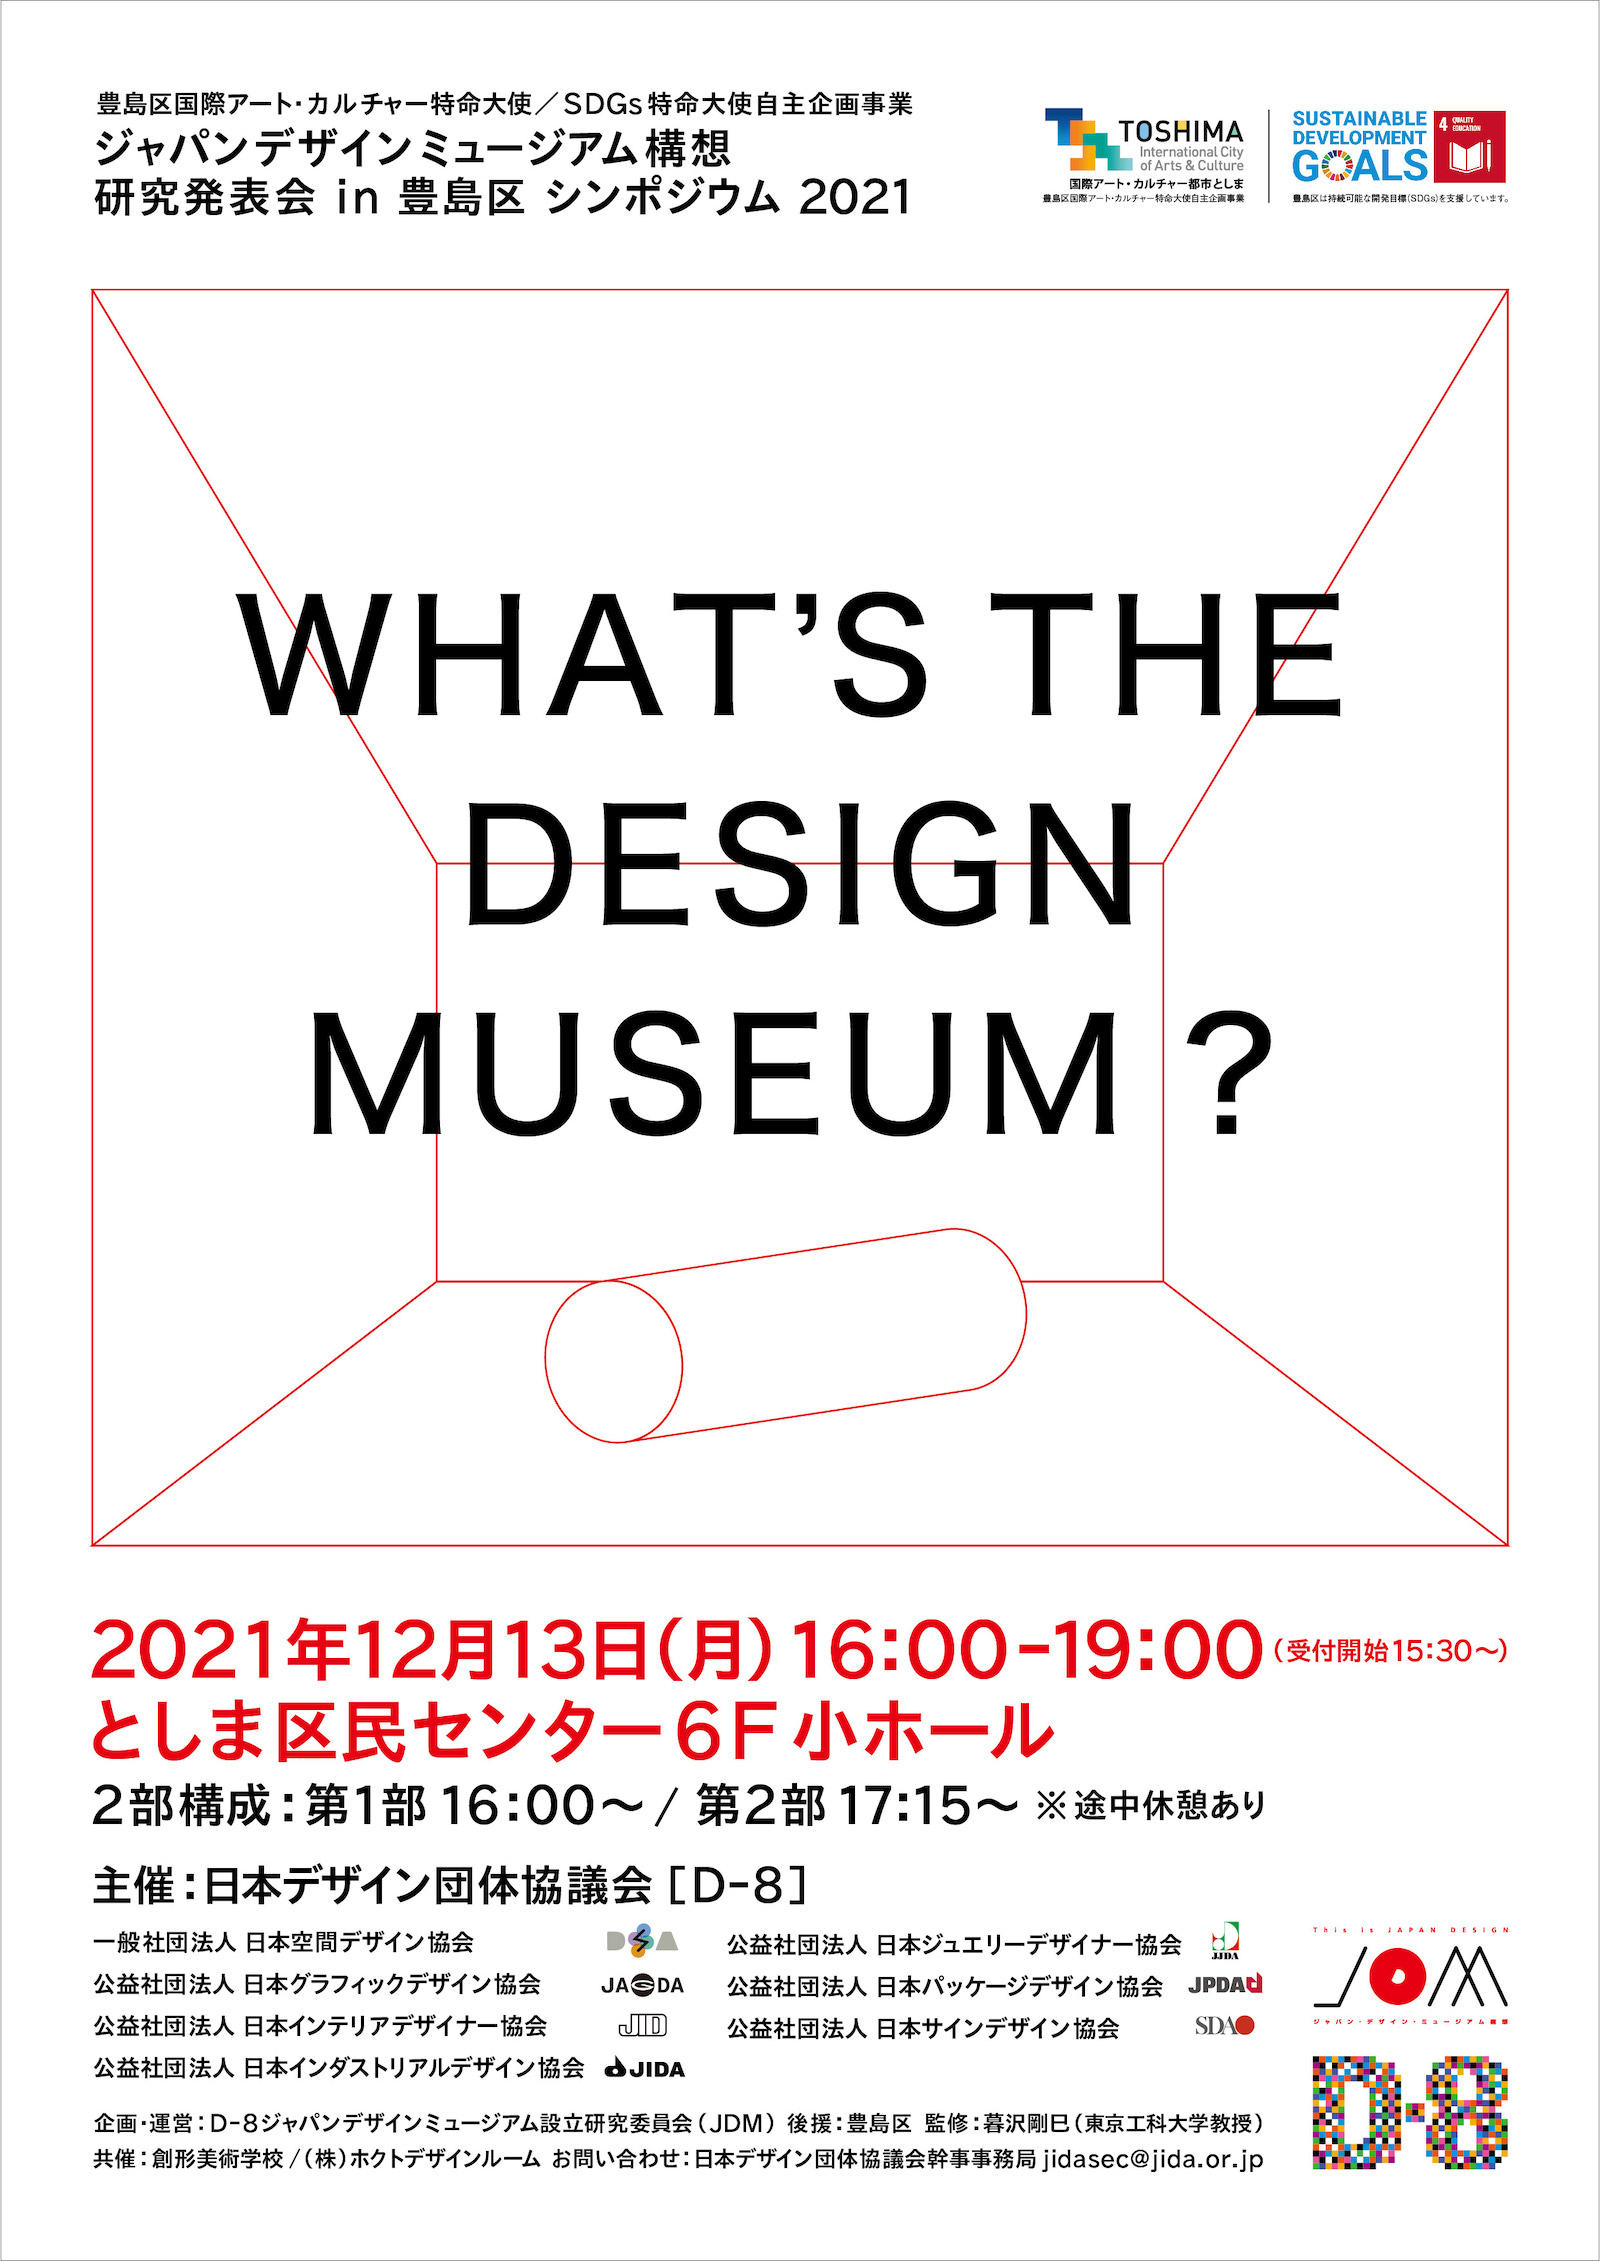 ジャパンデザインミュージアム構想研究発表会 in 豊島区 シンポジウム2021